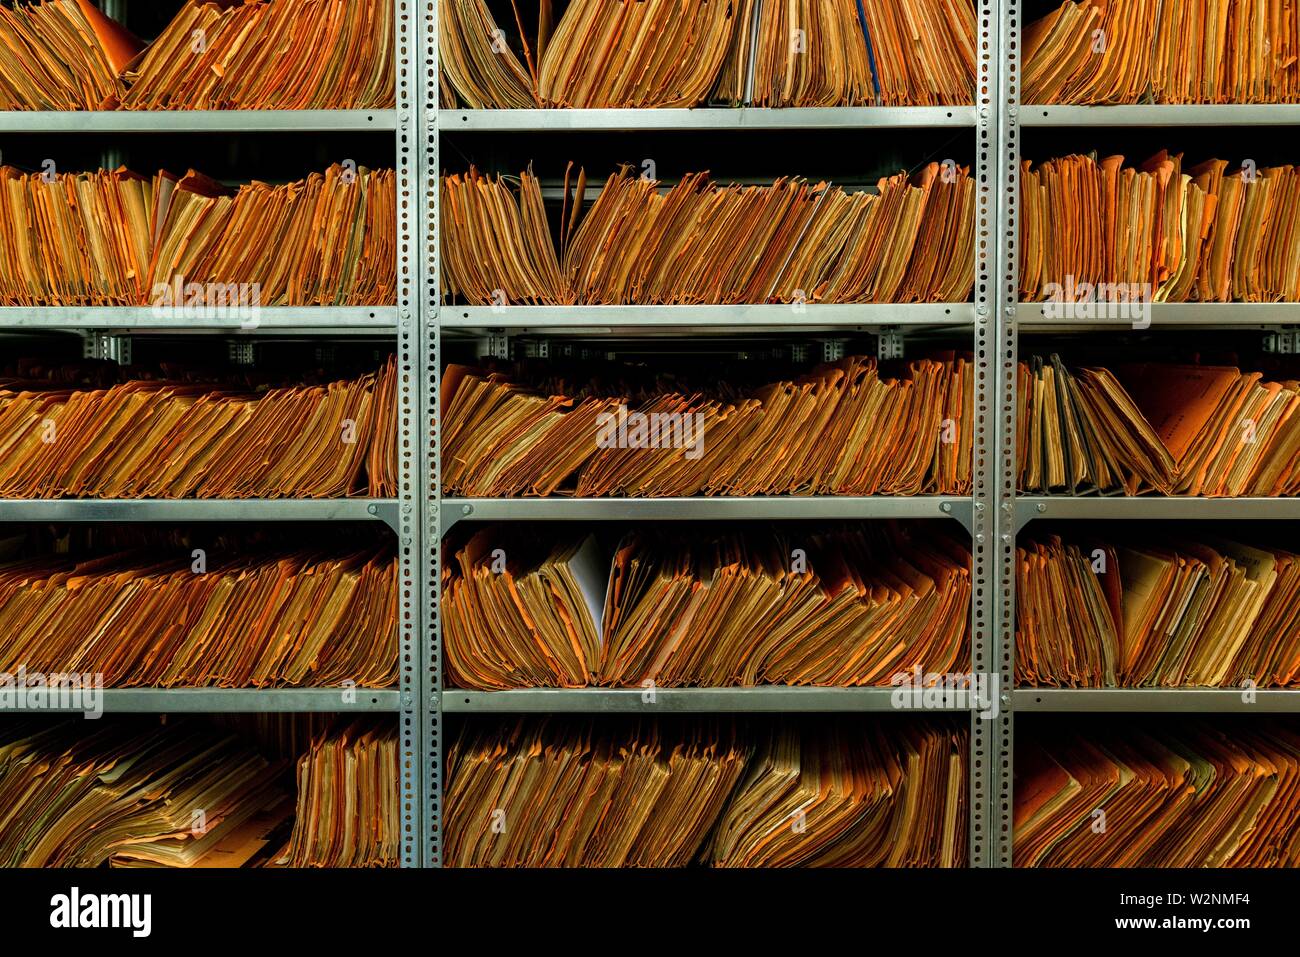 Berlin, Allemagne. La BStU est responsable pour le stockage et la conservation des archives de l'ex-Stasi MfS / Service de renseignement de la SED Banque D'Images